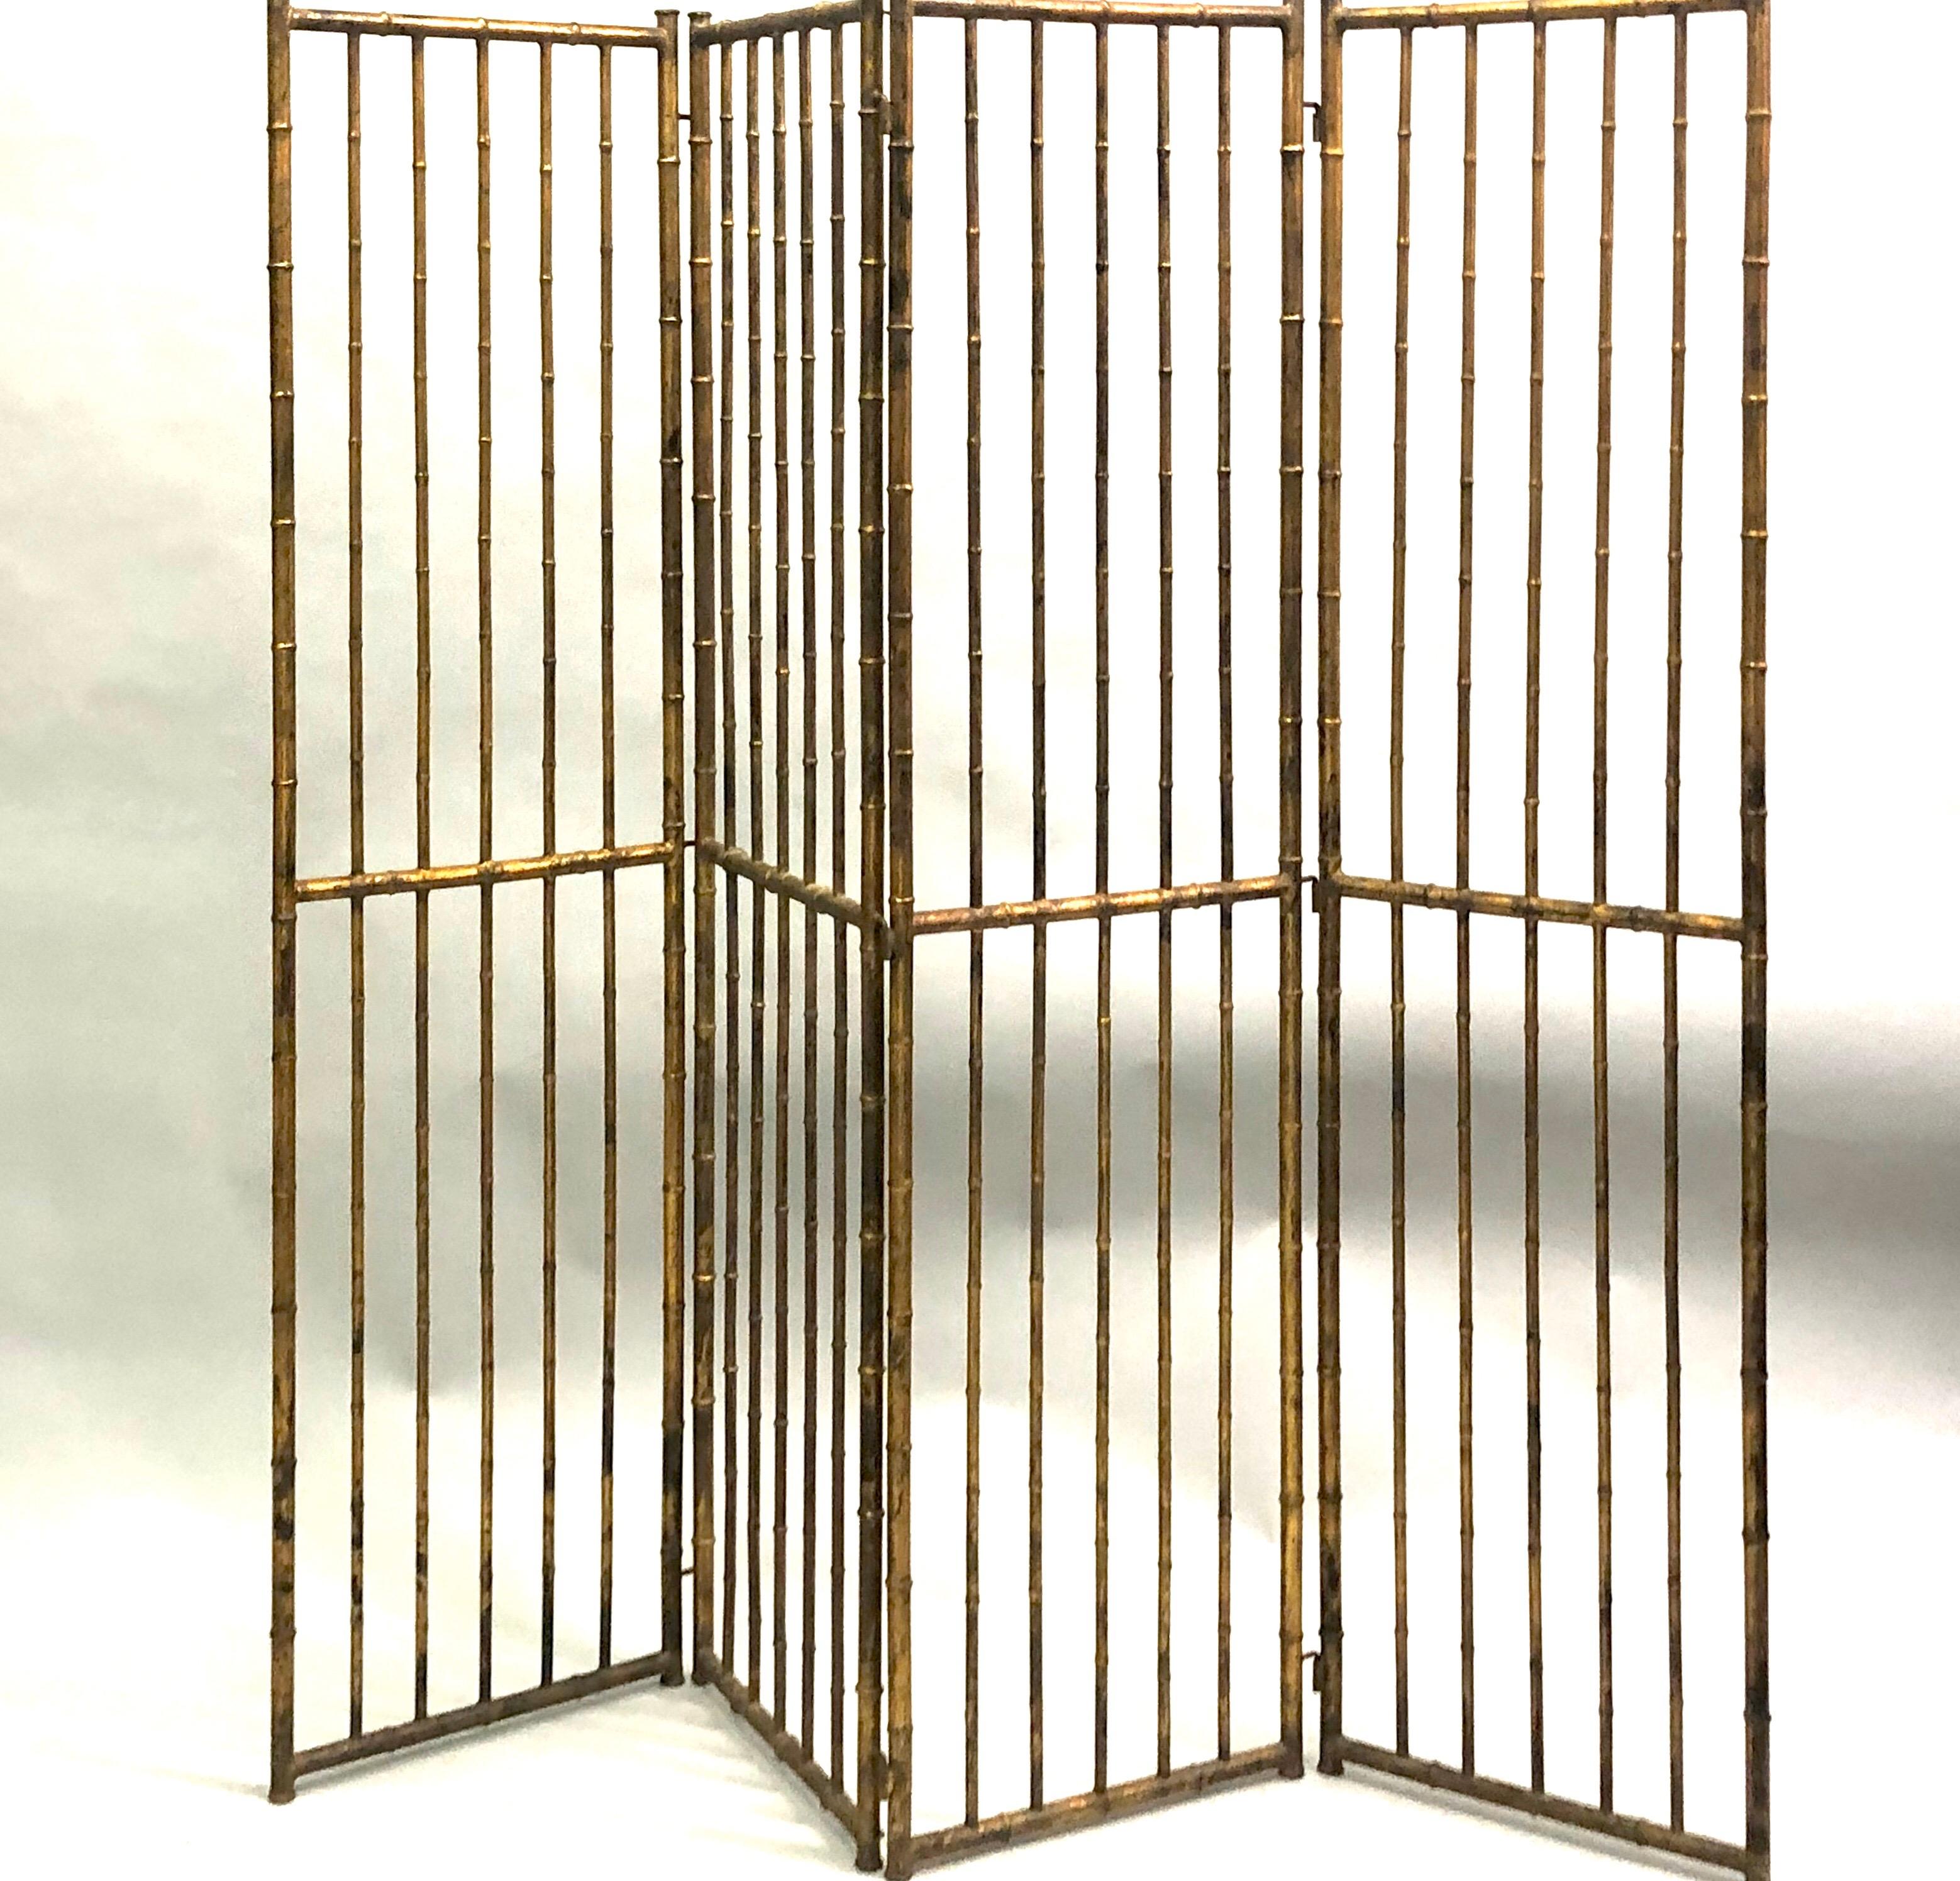 Paravent / séparateur de pièces néoclassique en fer forgé doré et faux bambou par la Maison Baguès, vers 1940-1950. Cette pièce élégante est composée de 4 panneaux, chaque panneau (17,5 pouces de large x 71 pouces de haut) pouvant se plier au besoin